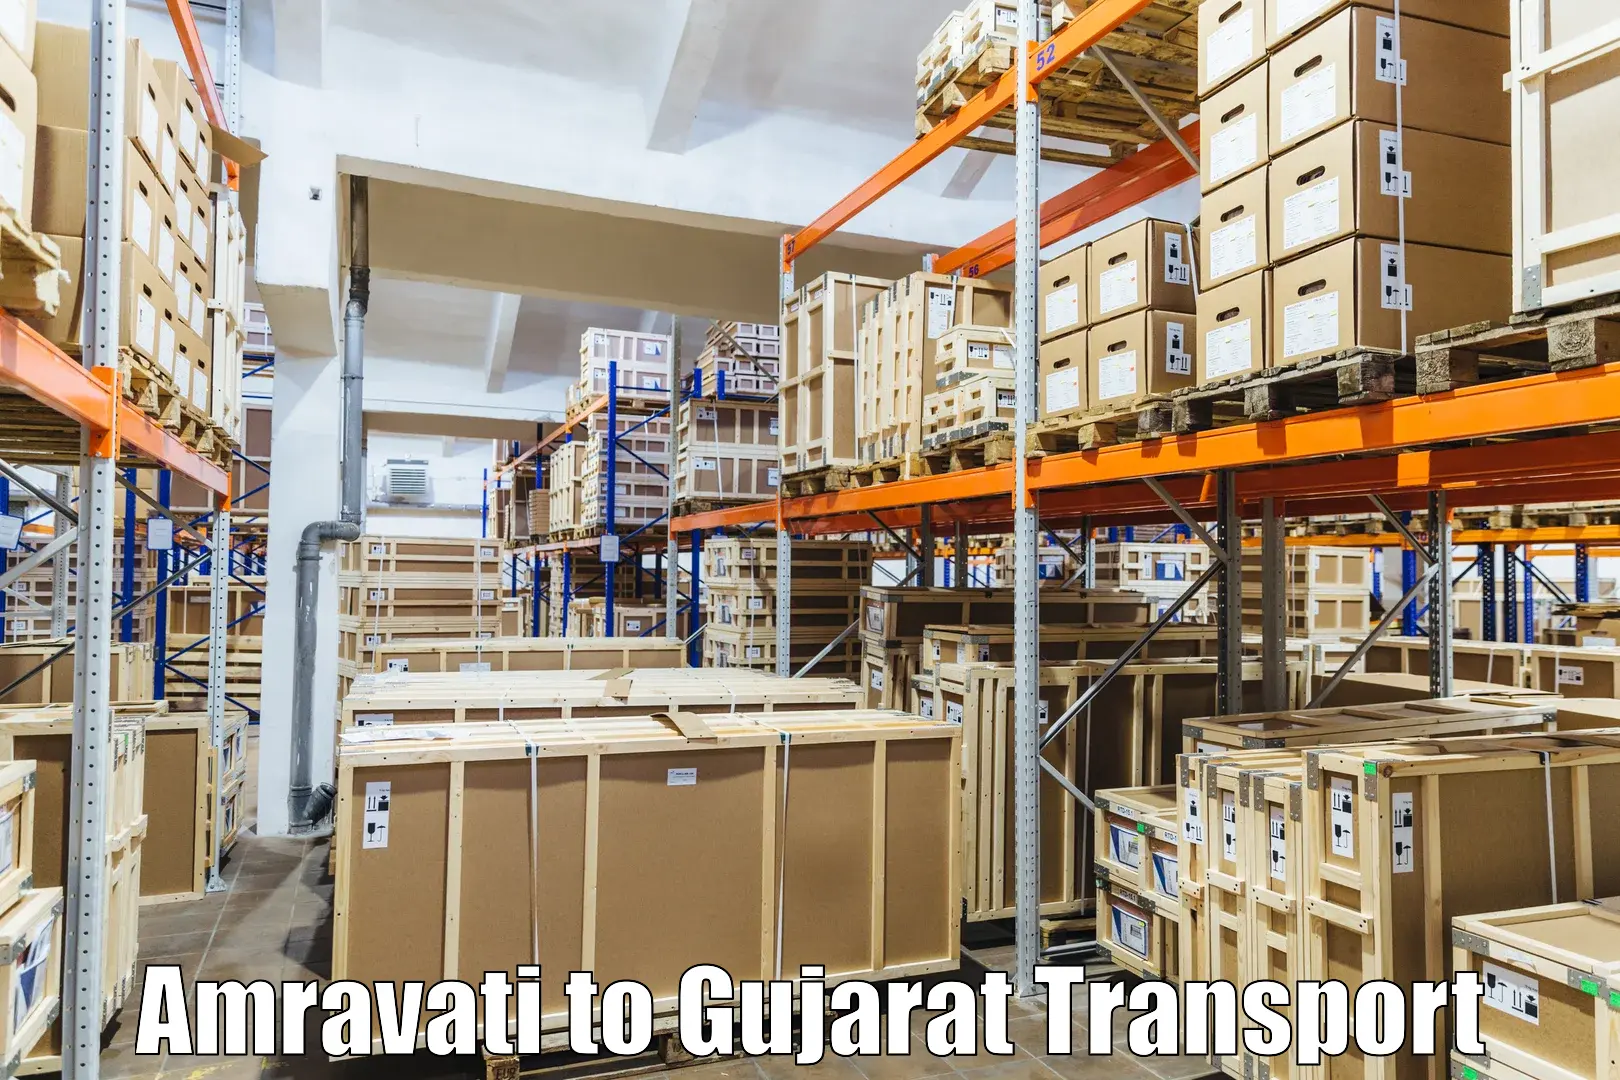 Daily parcel service transport in Amravati to Kodinar